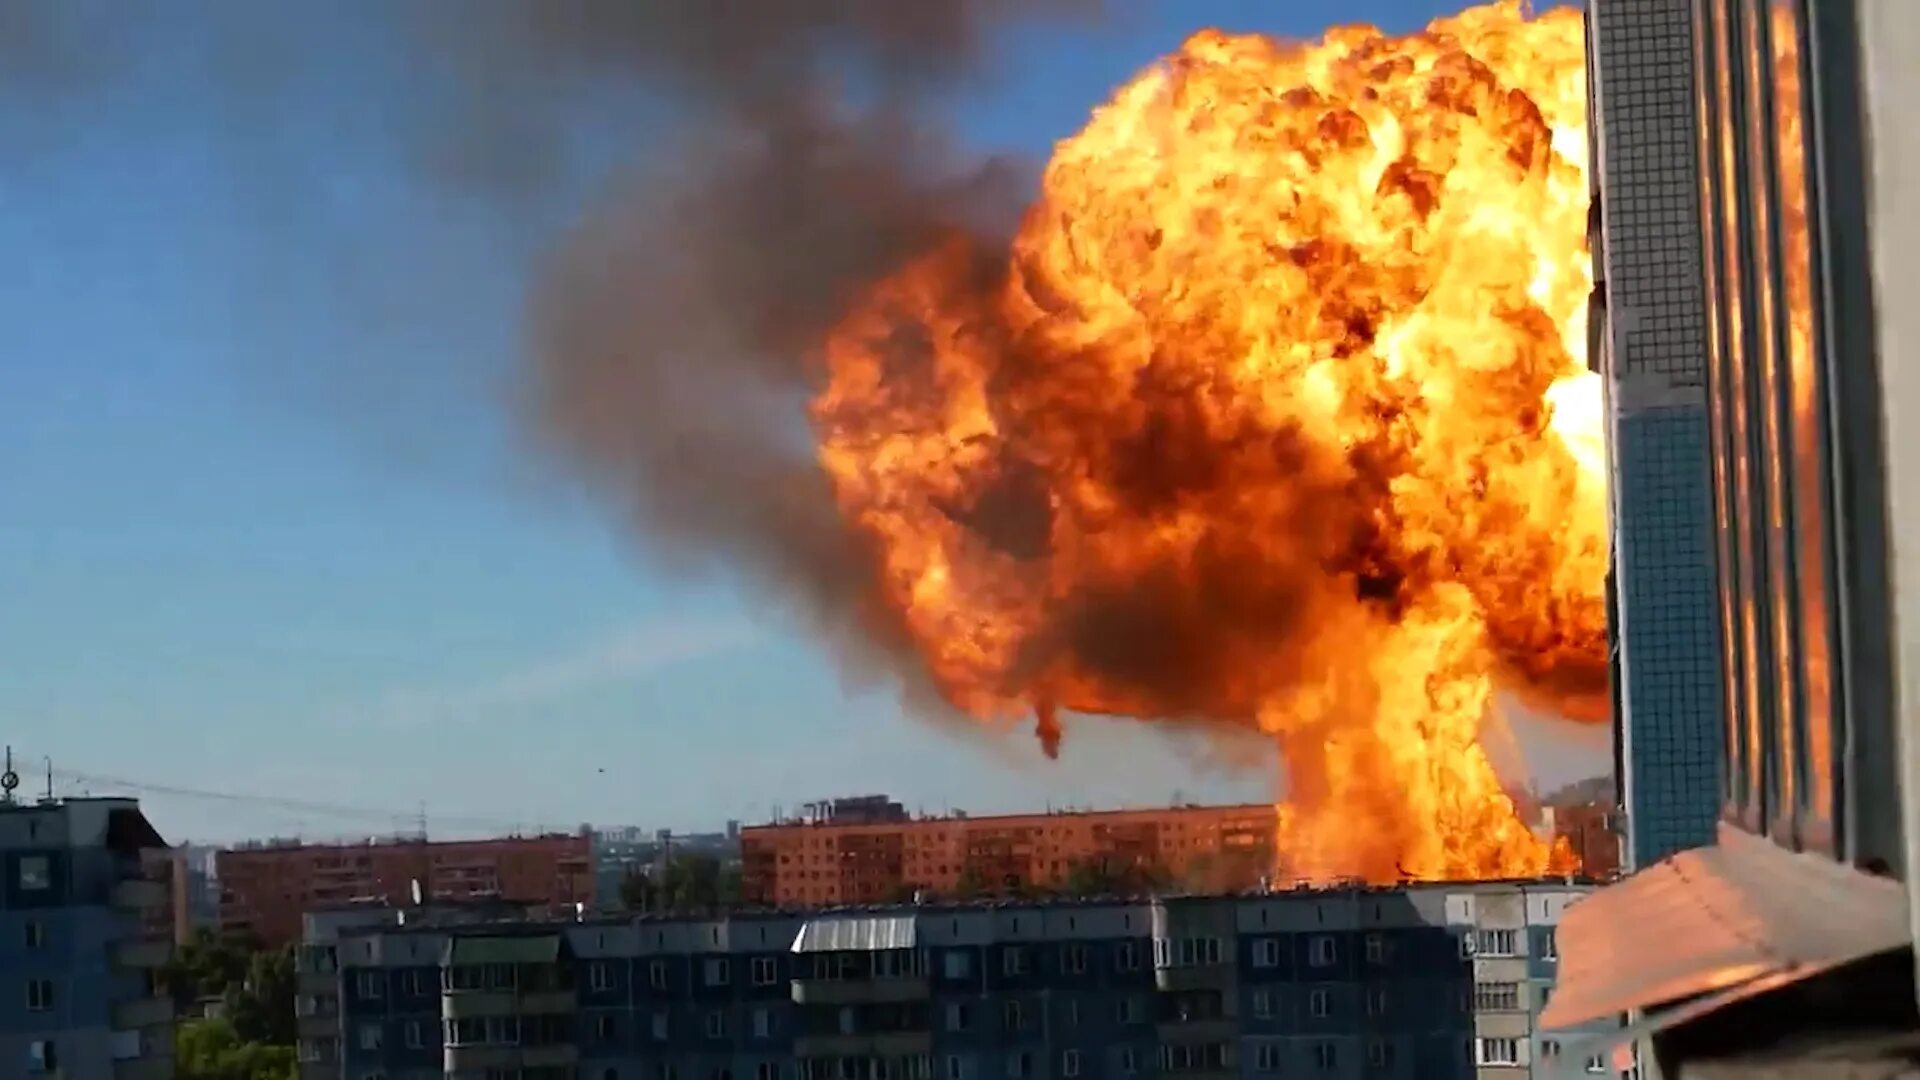 Звук взрыва вблизи. Взрыв в Новосибирске 14-06-2021. Взрыв на газовой заправке в Новосибирске 14.06.2021.